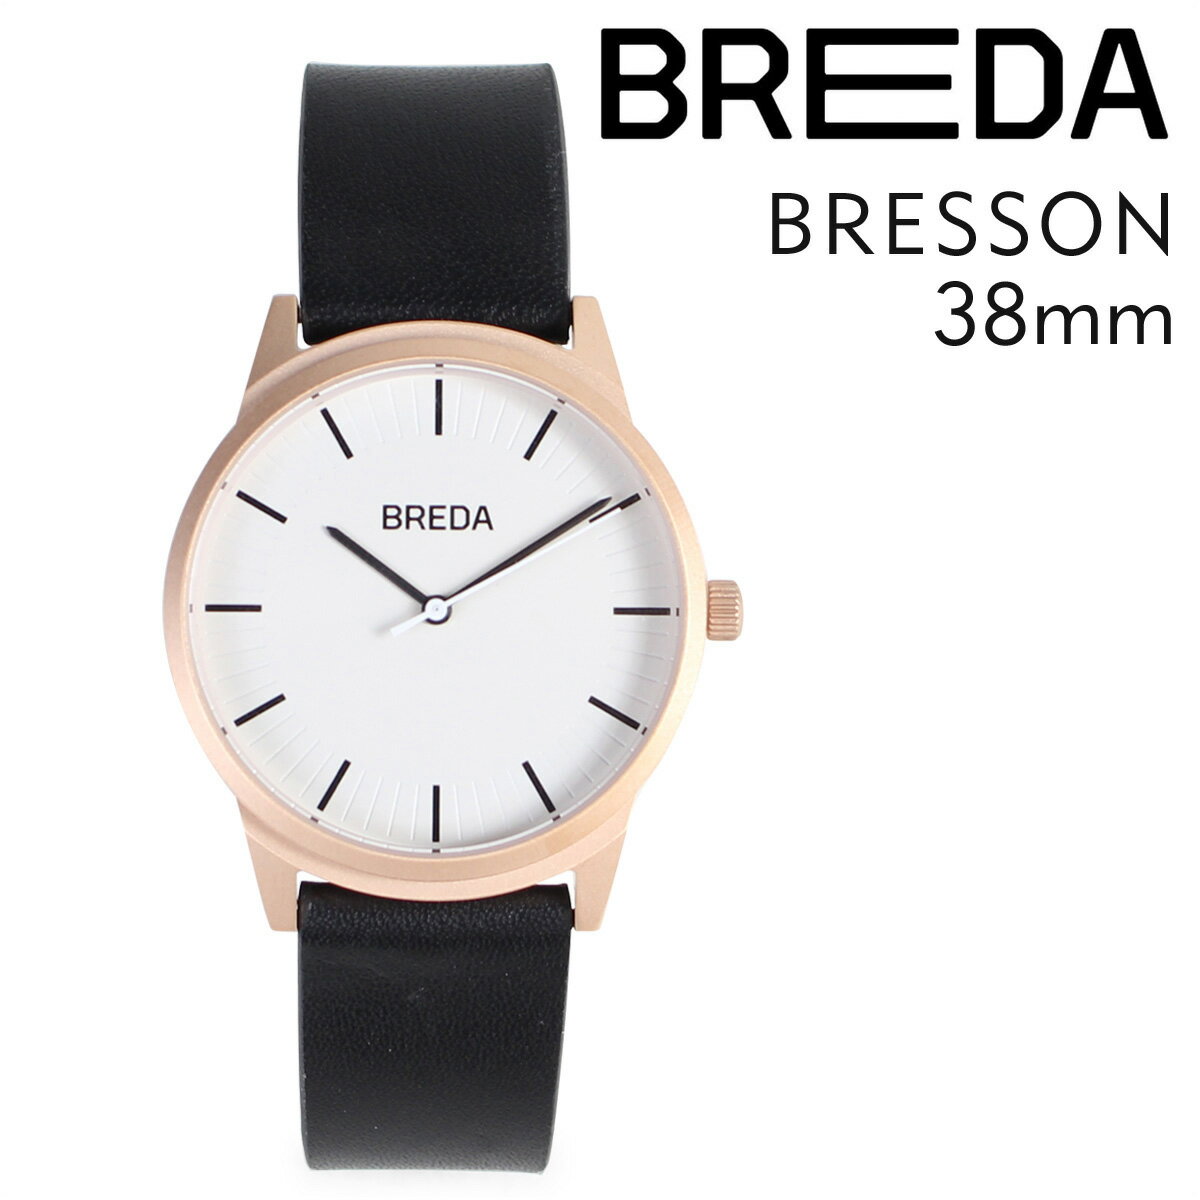 【最大1000円OFFクーポン配布中】 BREDA ブレダ 腕時計 38mm メンズ 時計 ブレッソン BRESSON 5020E ローズゴールド/ブラック